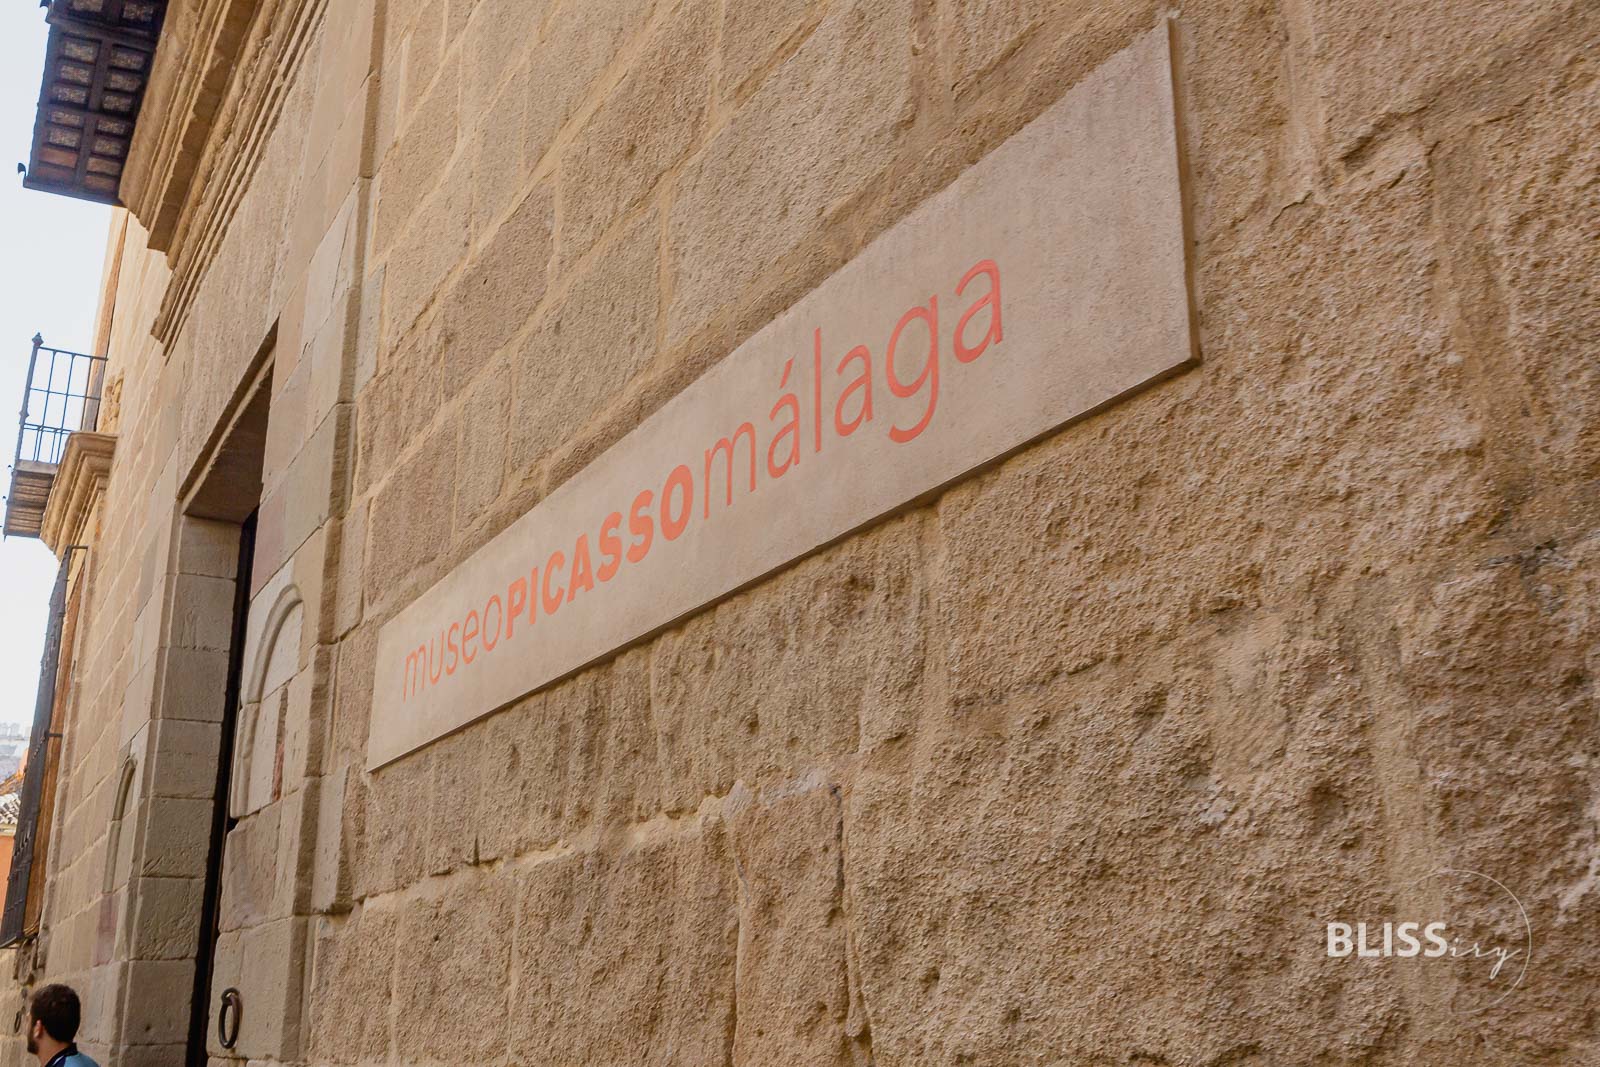 Malaga Sehenswürdigkeiten Top 10 mit Stadtbesichtigung in Andalusien. Pablo Picasso Museum, Alcazaba Festung, Kathedrale von Malaga